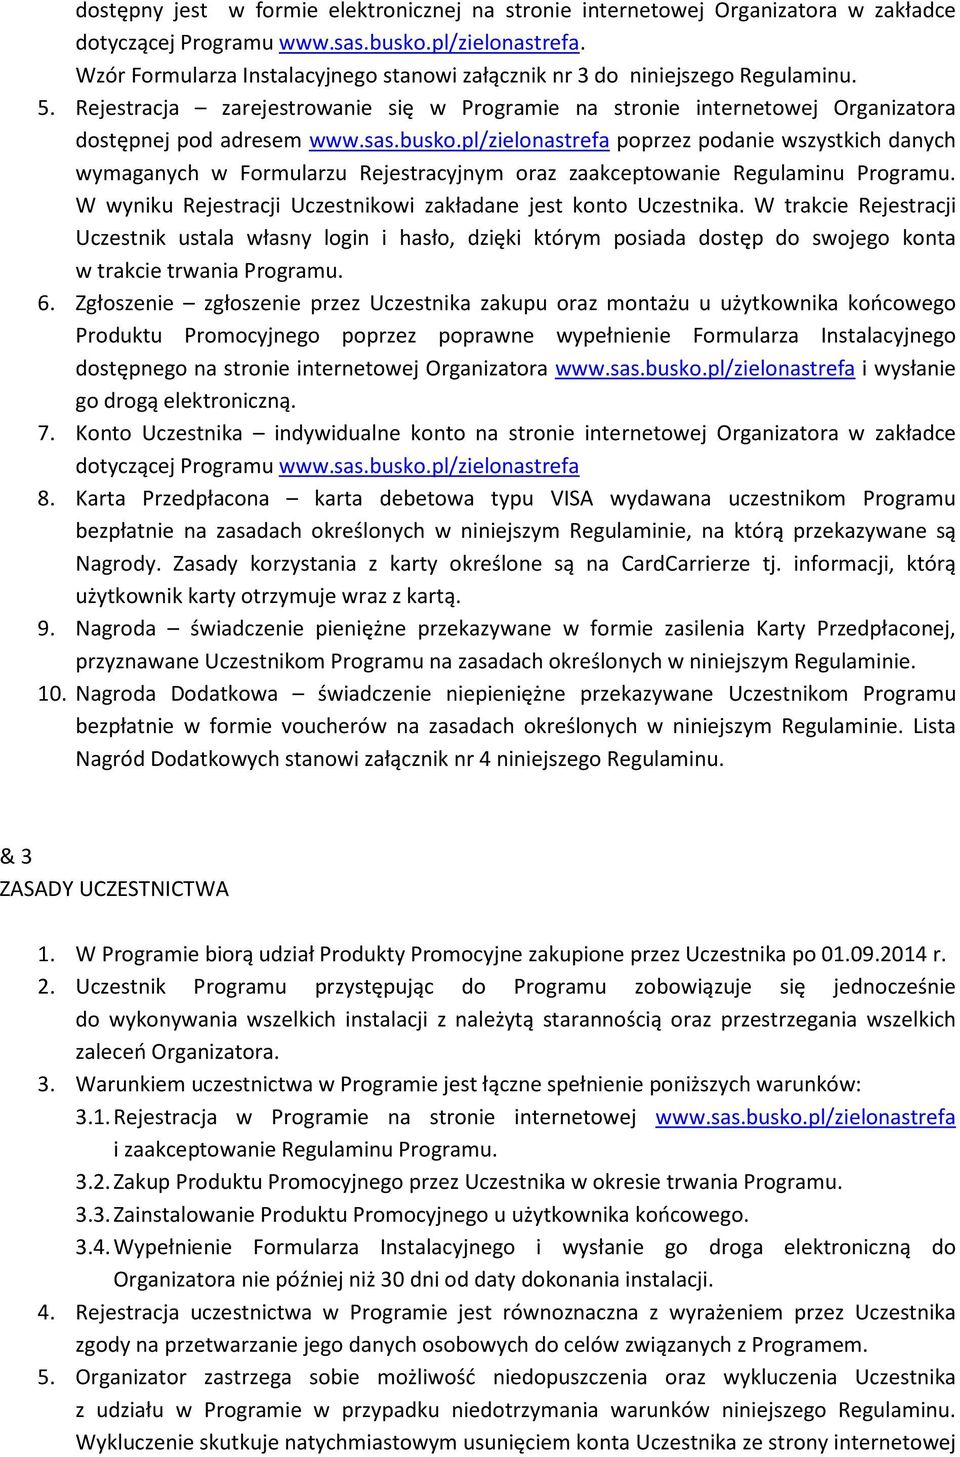 busko.pl/zielonastrefa poprzez podanie wszystkich danych wymaganych w Formularzu Rejestracyjnym oraz zaakceptowanie Regulaminu Programu.